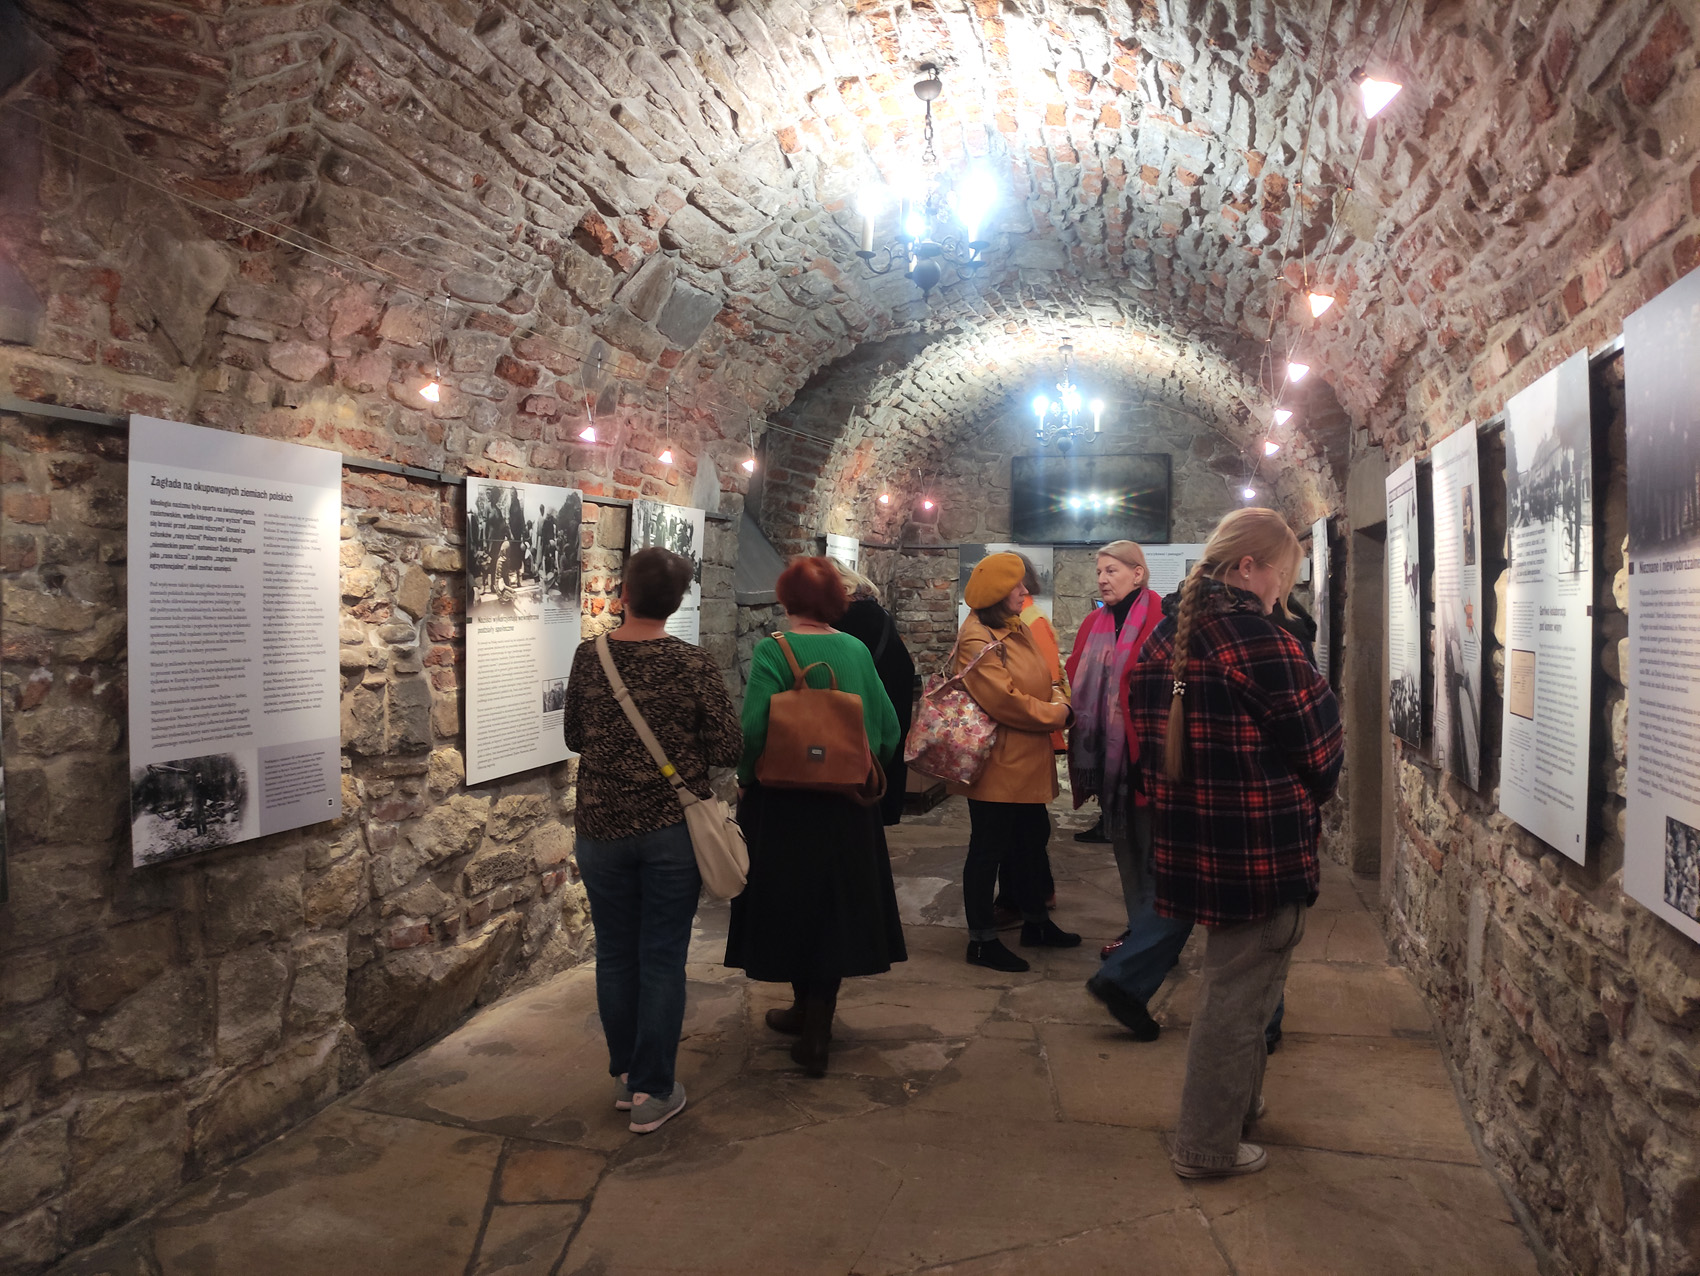 Długa kamienna piwnica ze świecącymi się wiszącymi żyrandolami. W niej grupa ludzi oglądająca plansze wystawiennicze z tekstem i zdjęciami.